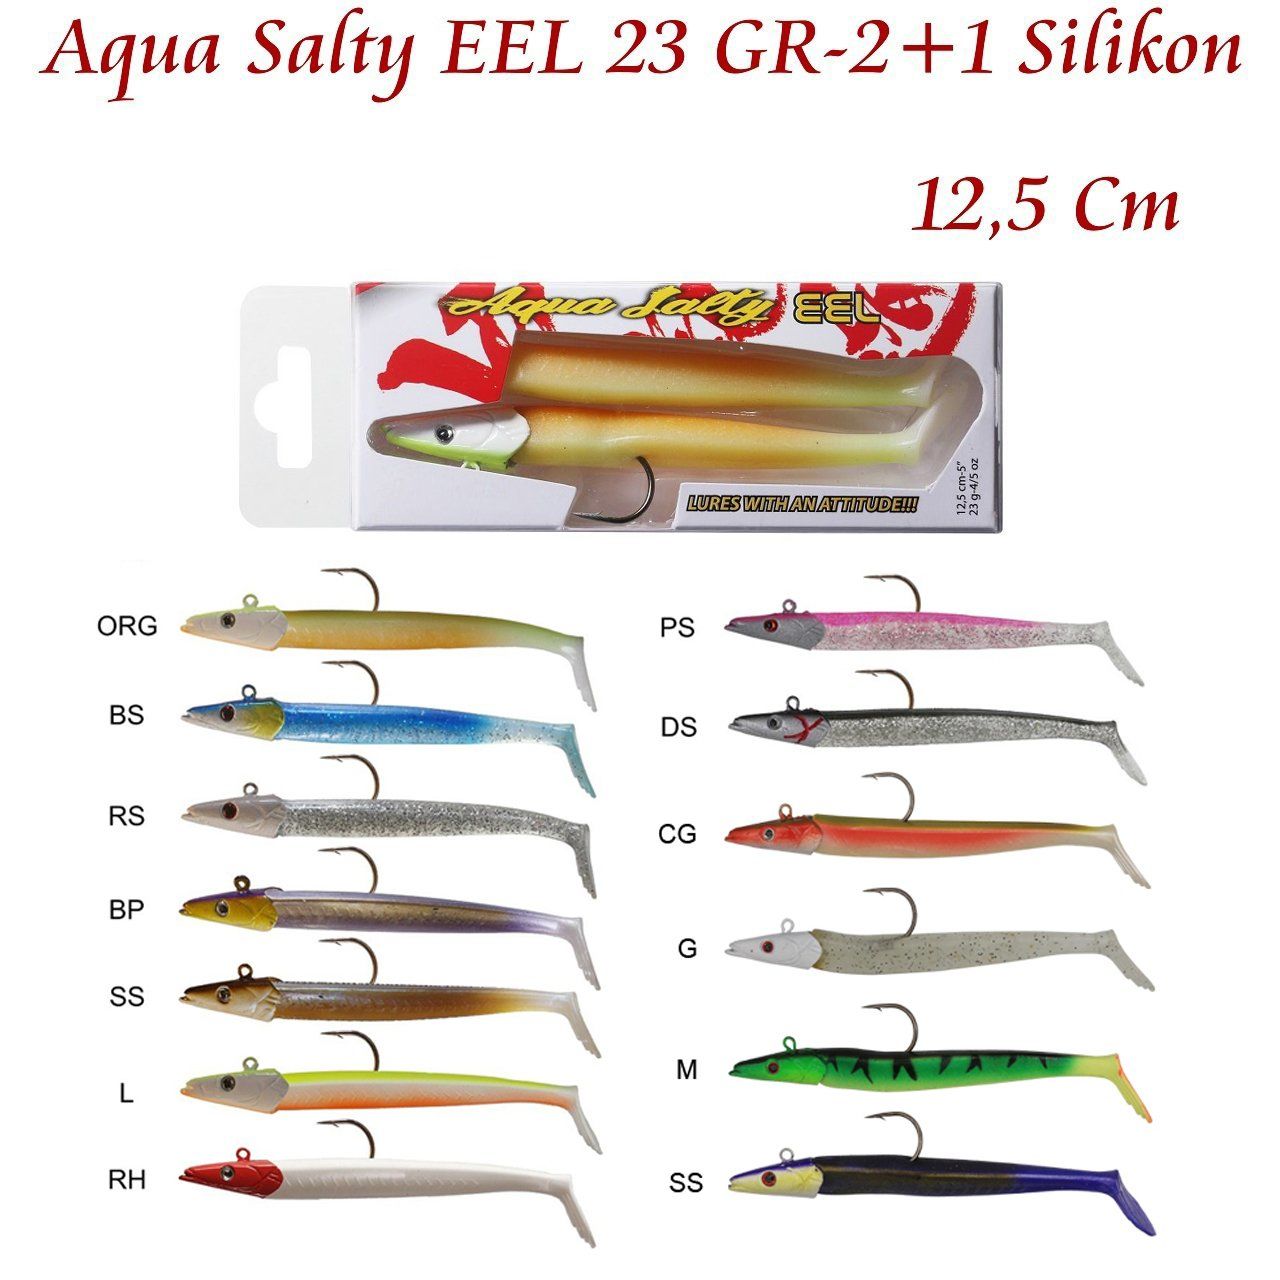 Aqua Salty EEL 23 GR-2+1 Silikon